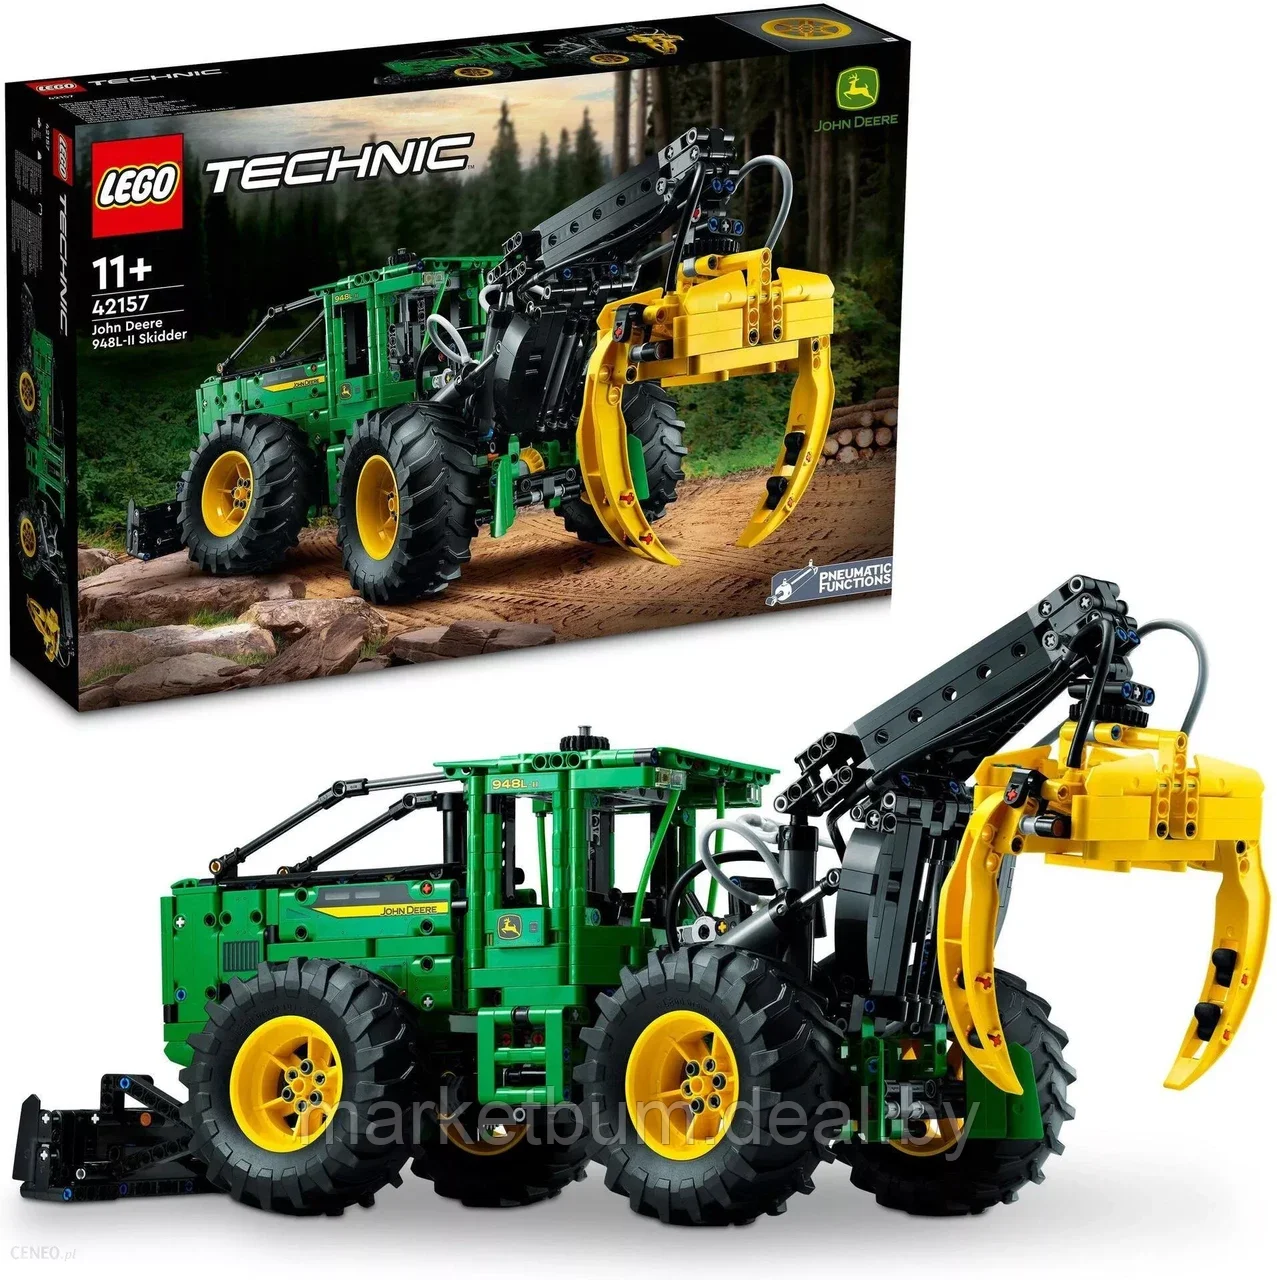 Конструктор LEGO Technic 42157, трактор John Deere 948l-II